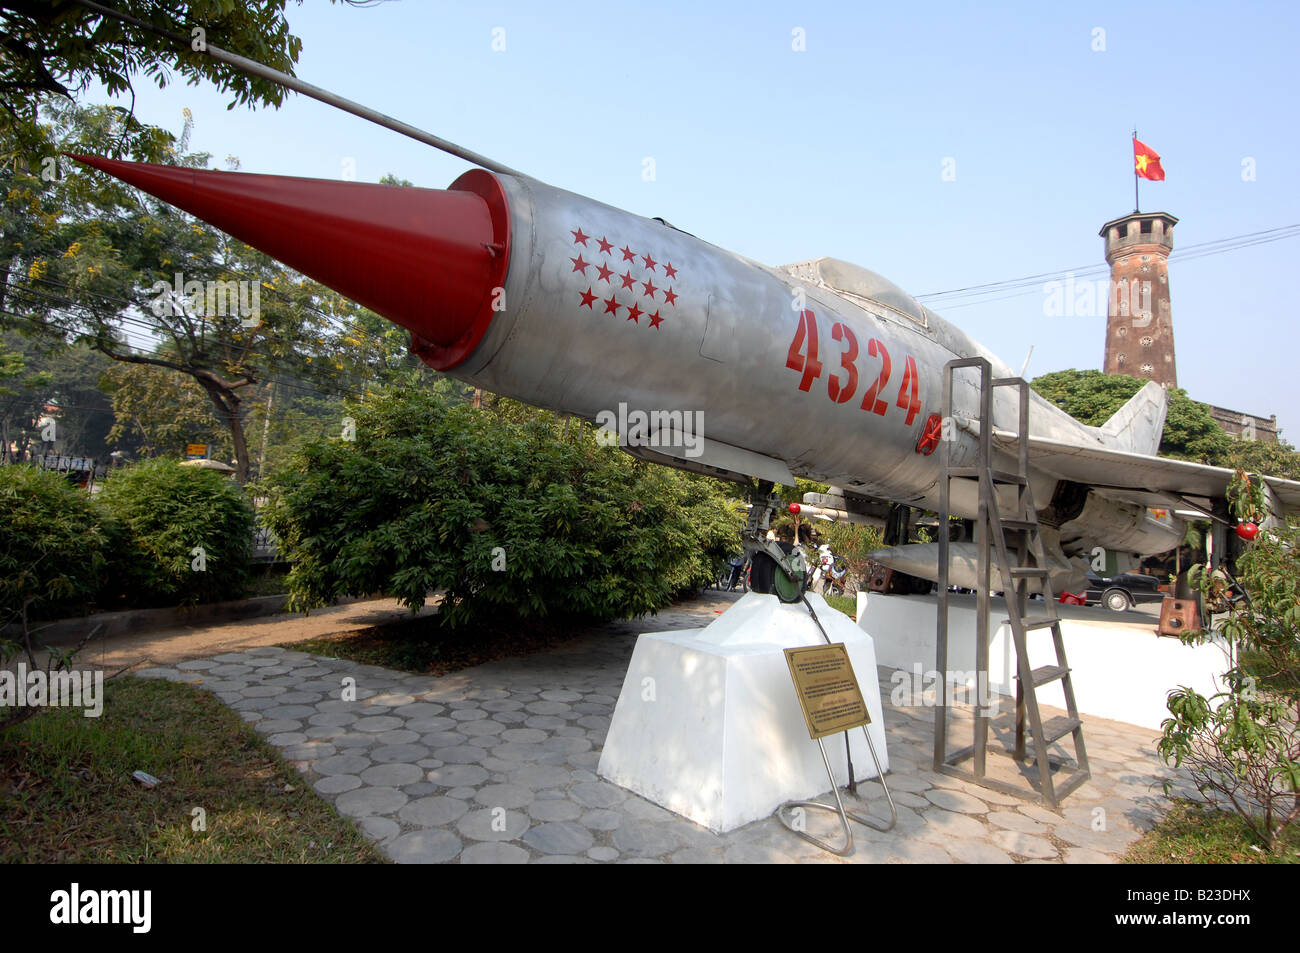 Military air vehicle in museum, Hanoi, Vietnam Stock Photo